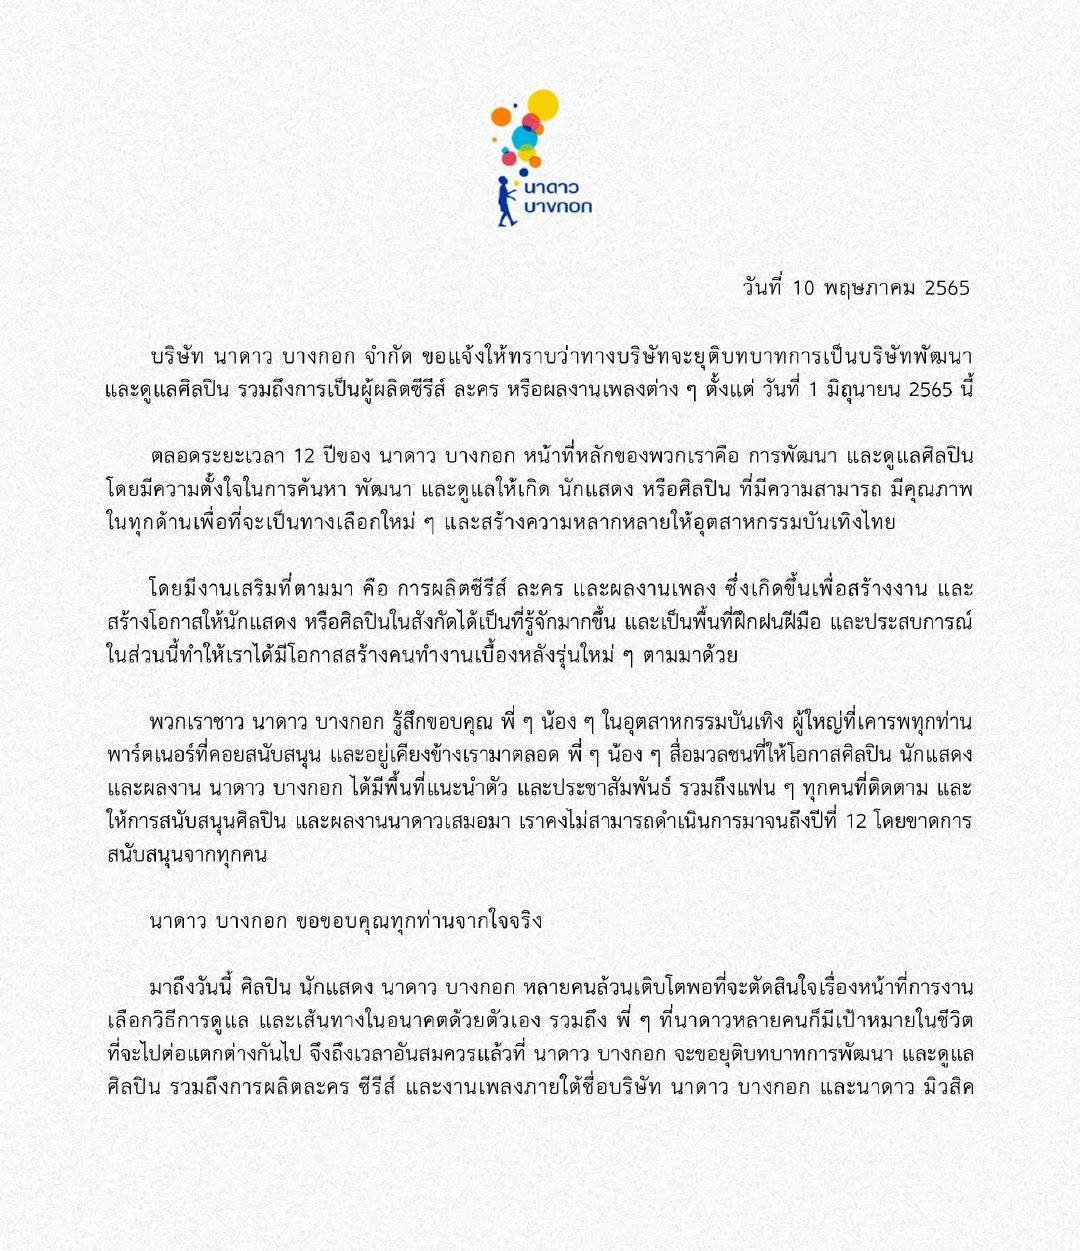 泰国GMM旗下Nadao Bangkok公司nadao停止艺人发展